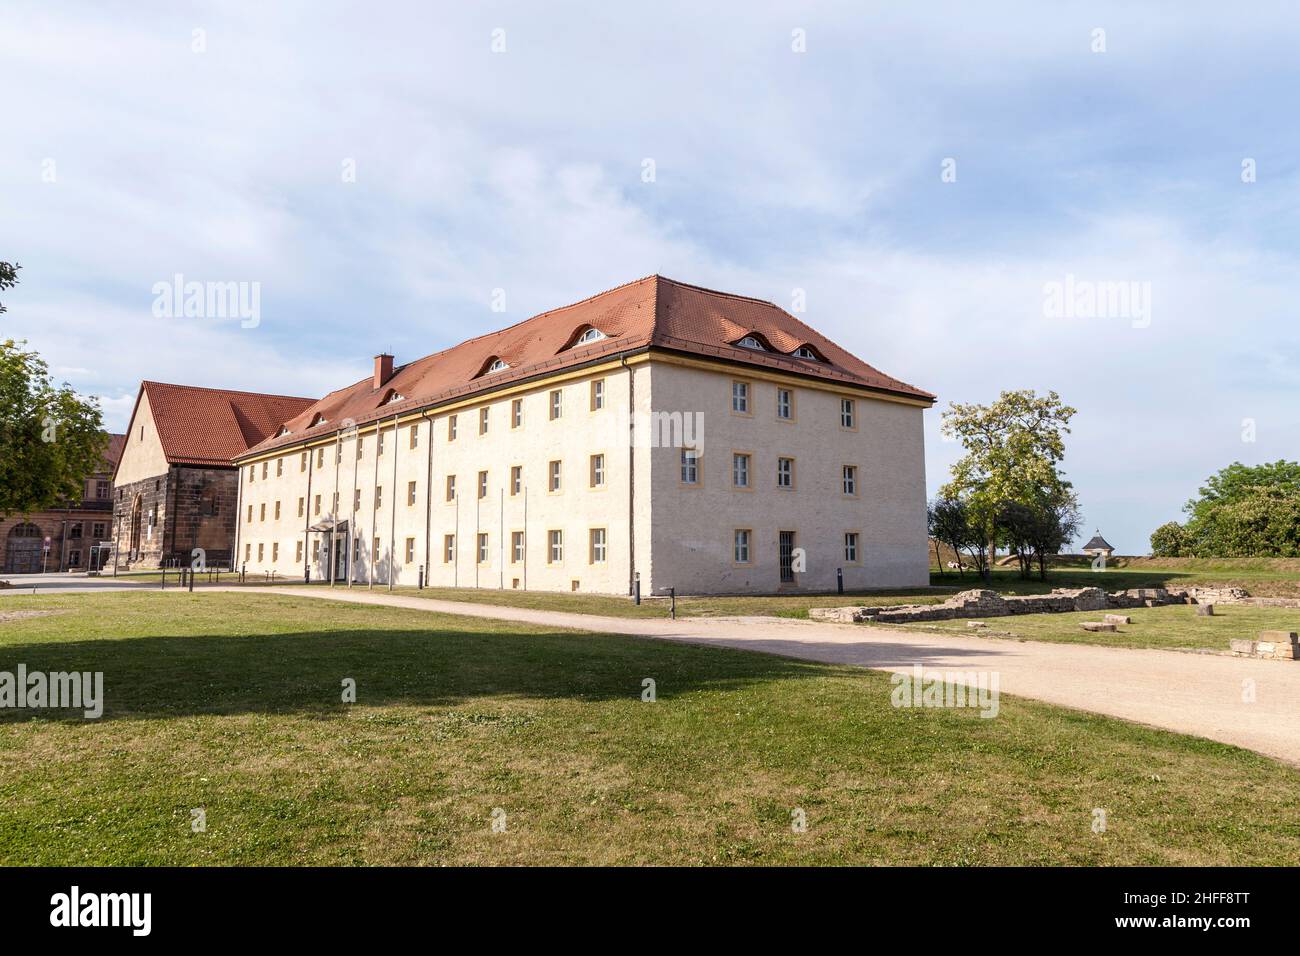 Die Zitadelle Petersberg in Erfurt ist eine der größten noch existierenden frühmodernen Zitadellen in Europa Stockfoto